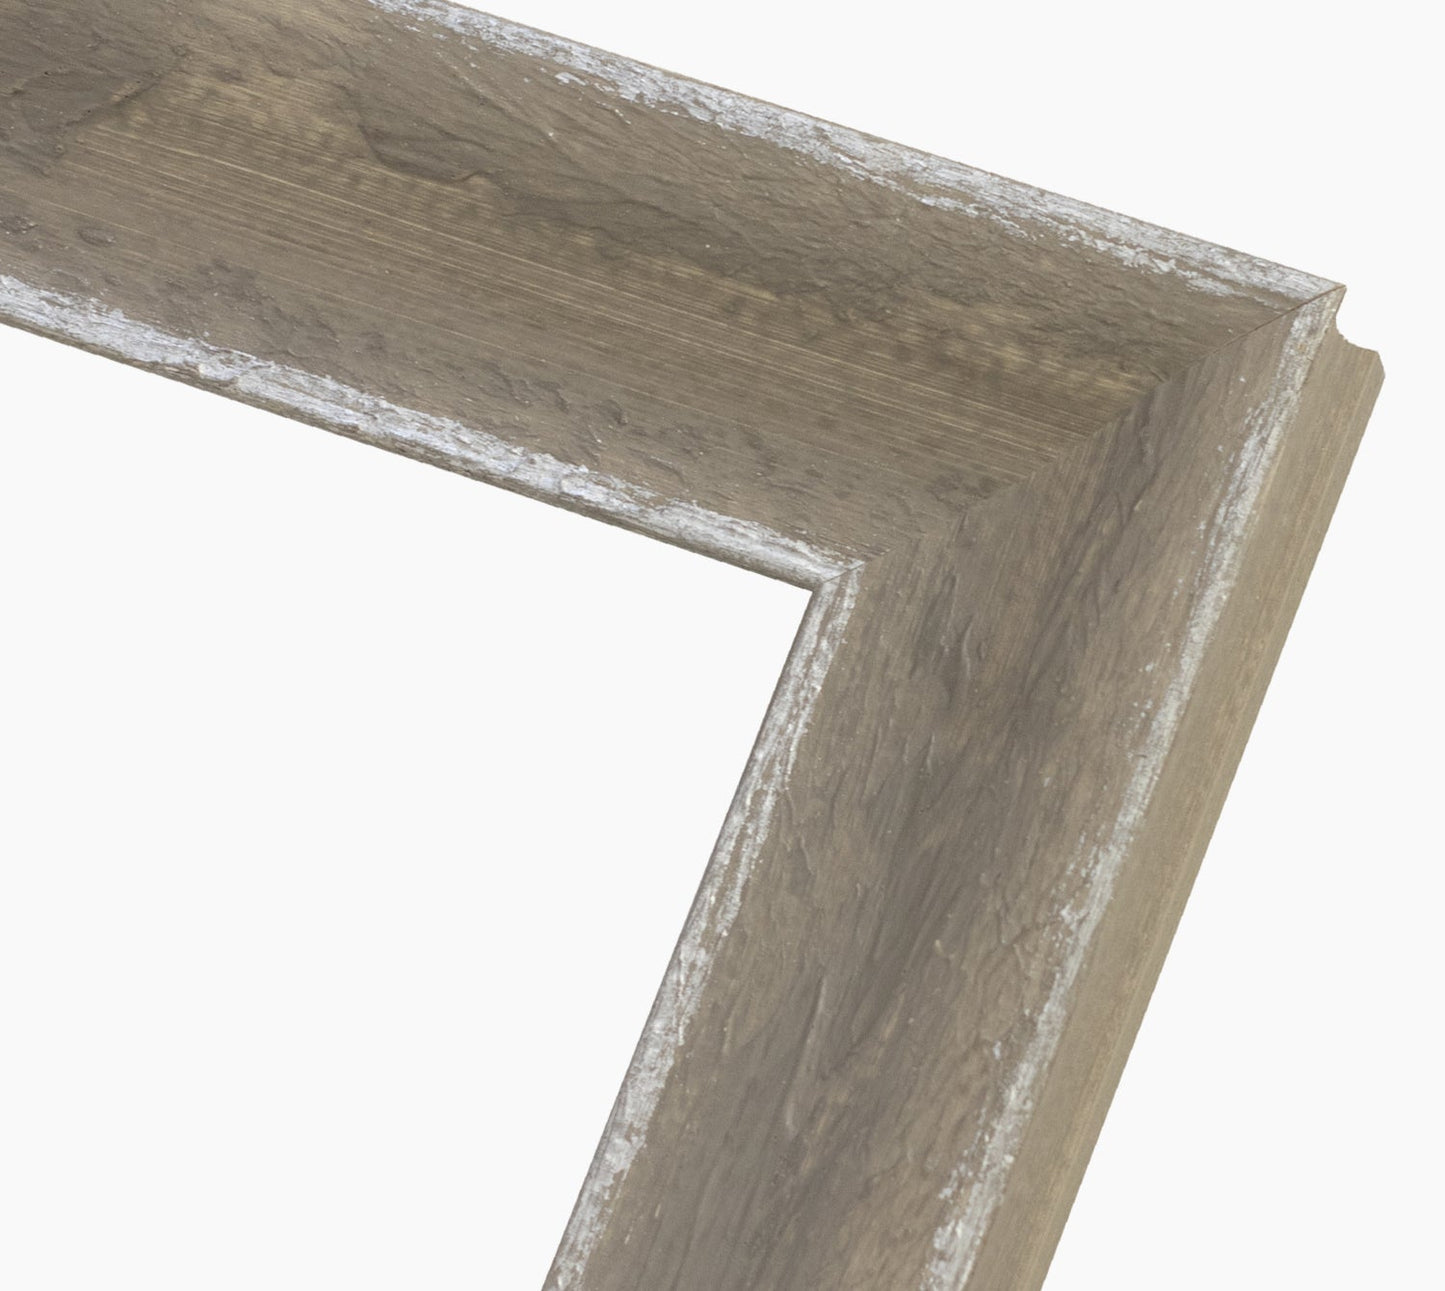 345.454 cadre en bois gris avec argent  mesure de profil 60x45 mm Lombarda cornici S.n.c.